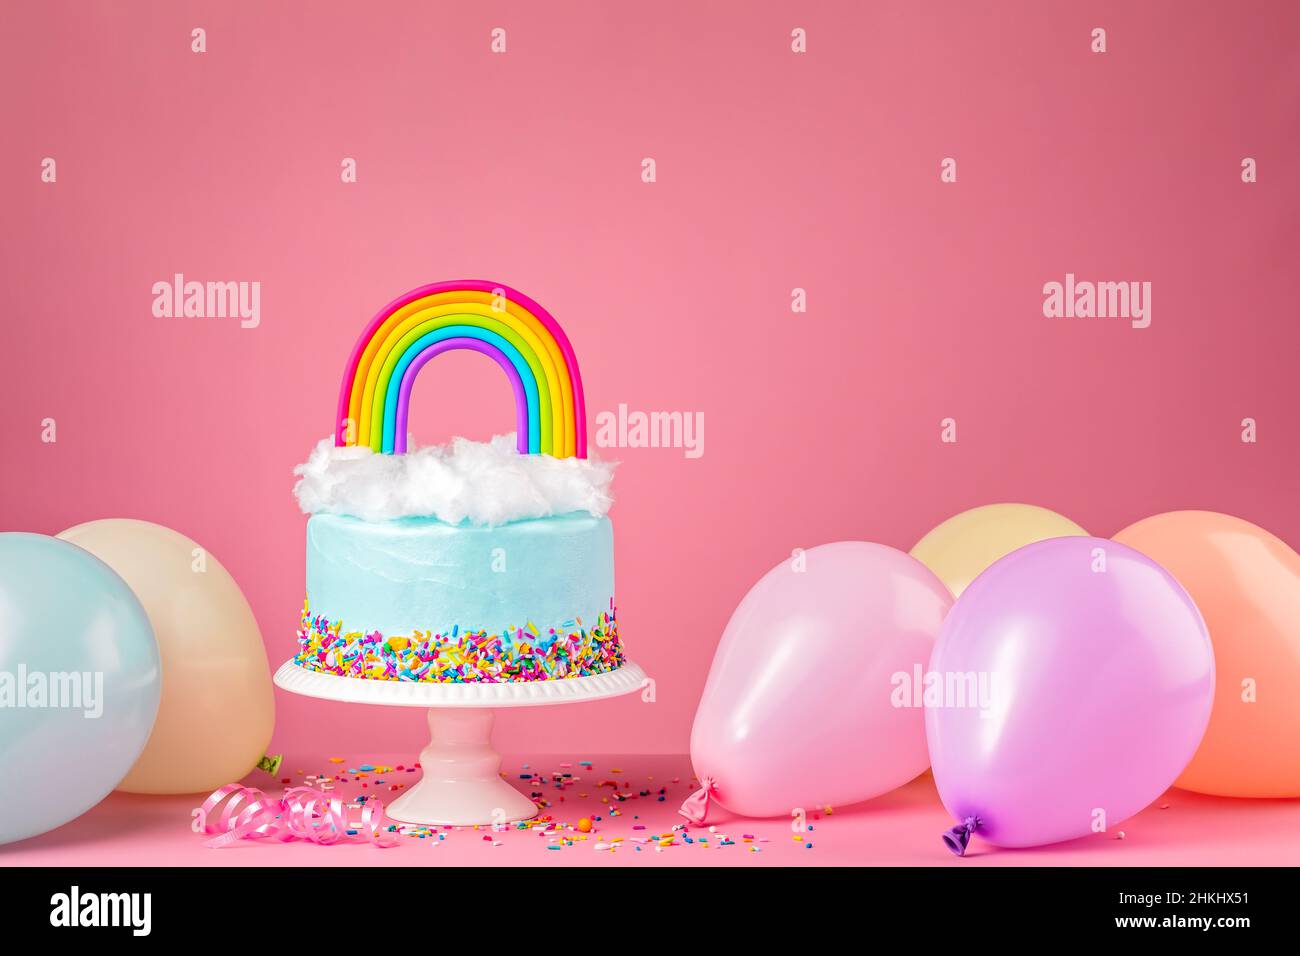 Tarta de cumpleaños feliz con confeti de colores y chocolate blanco.